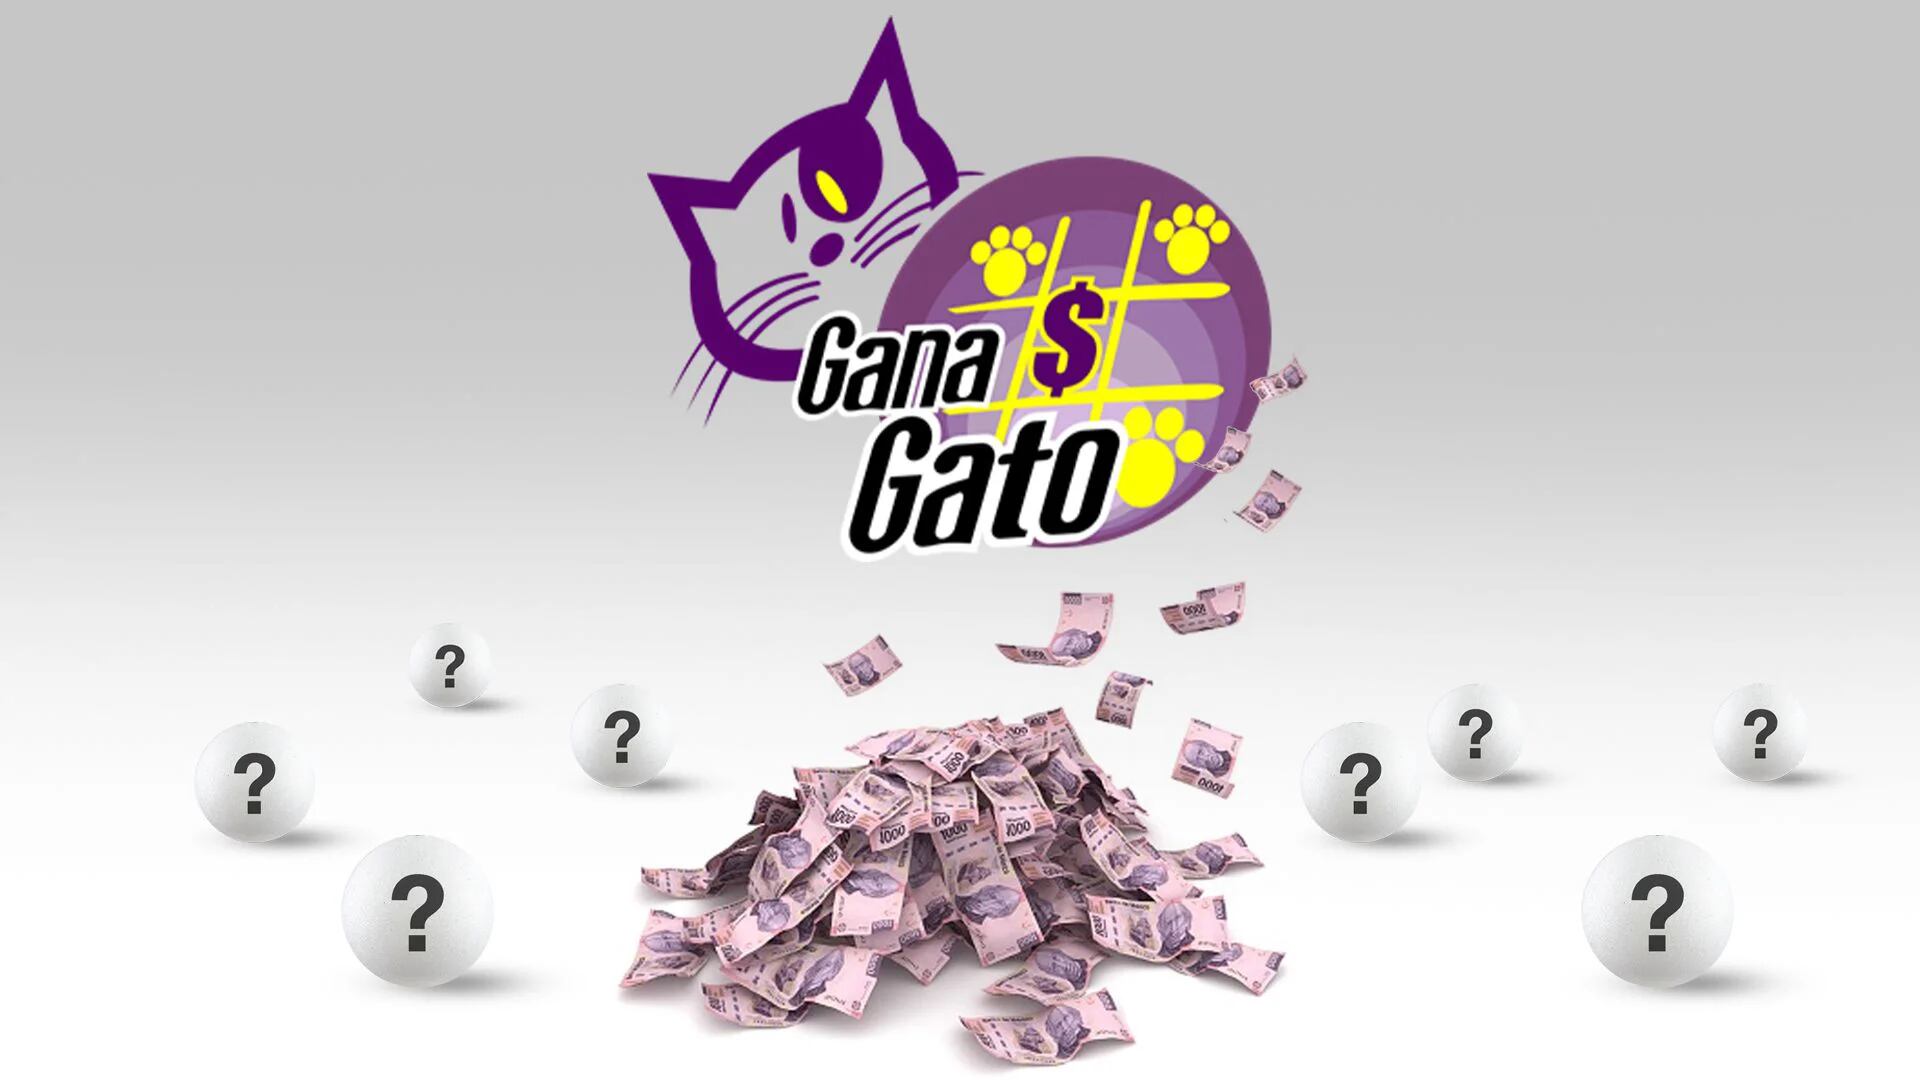 ¿Eres el afortunado ganador del sorteo Gana Gato?